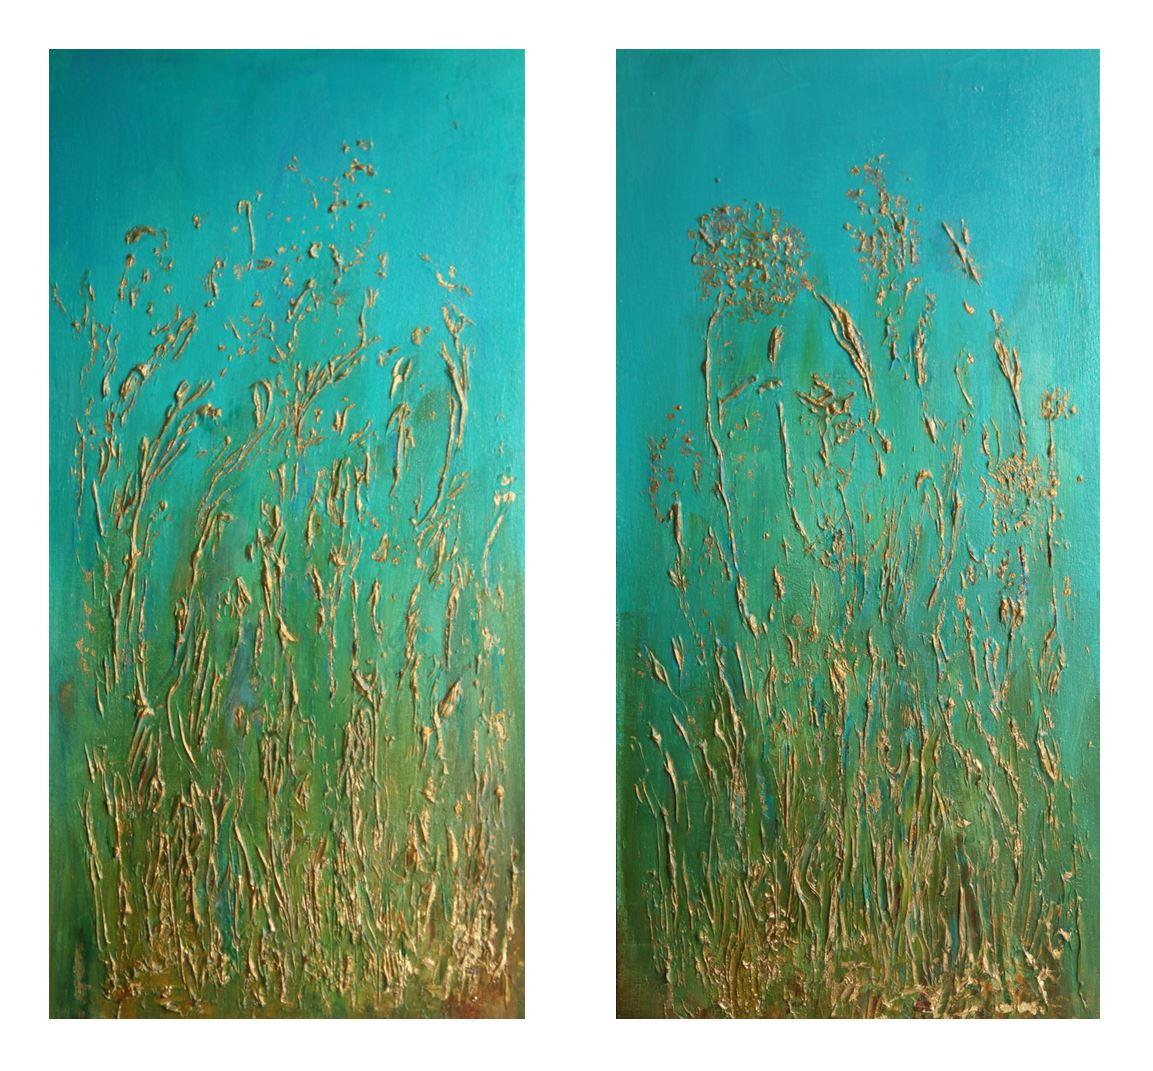 Still-Life Painting Carolyn Miller - Herbes dorées. Peinture impressionniste contemporaine en diptyque